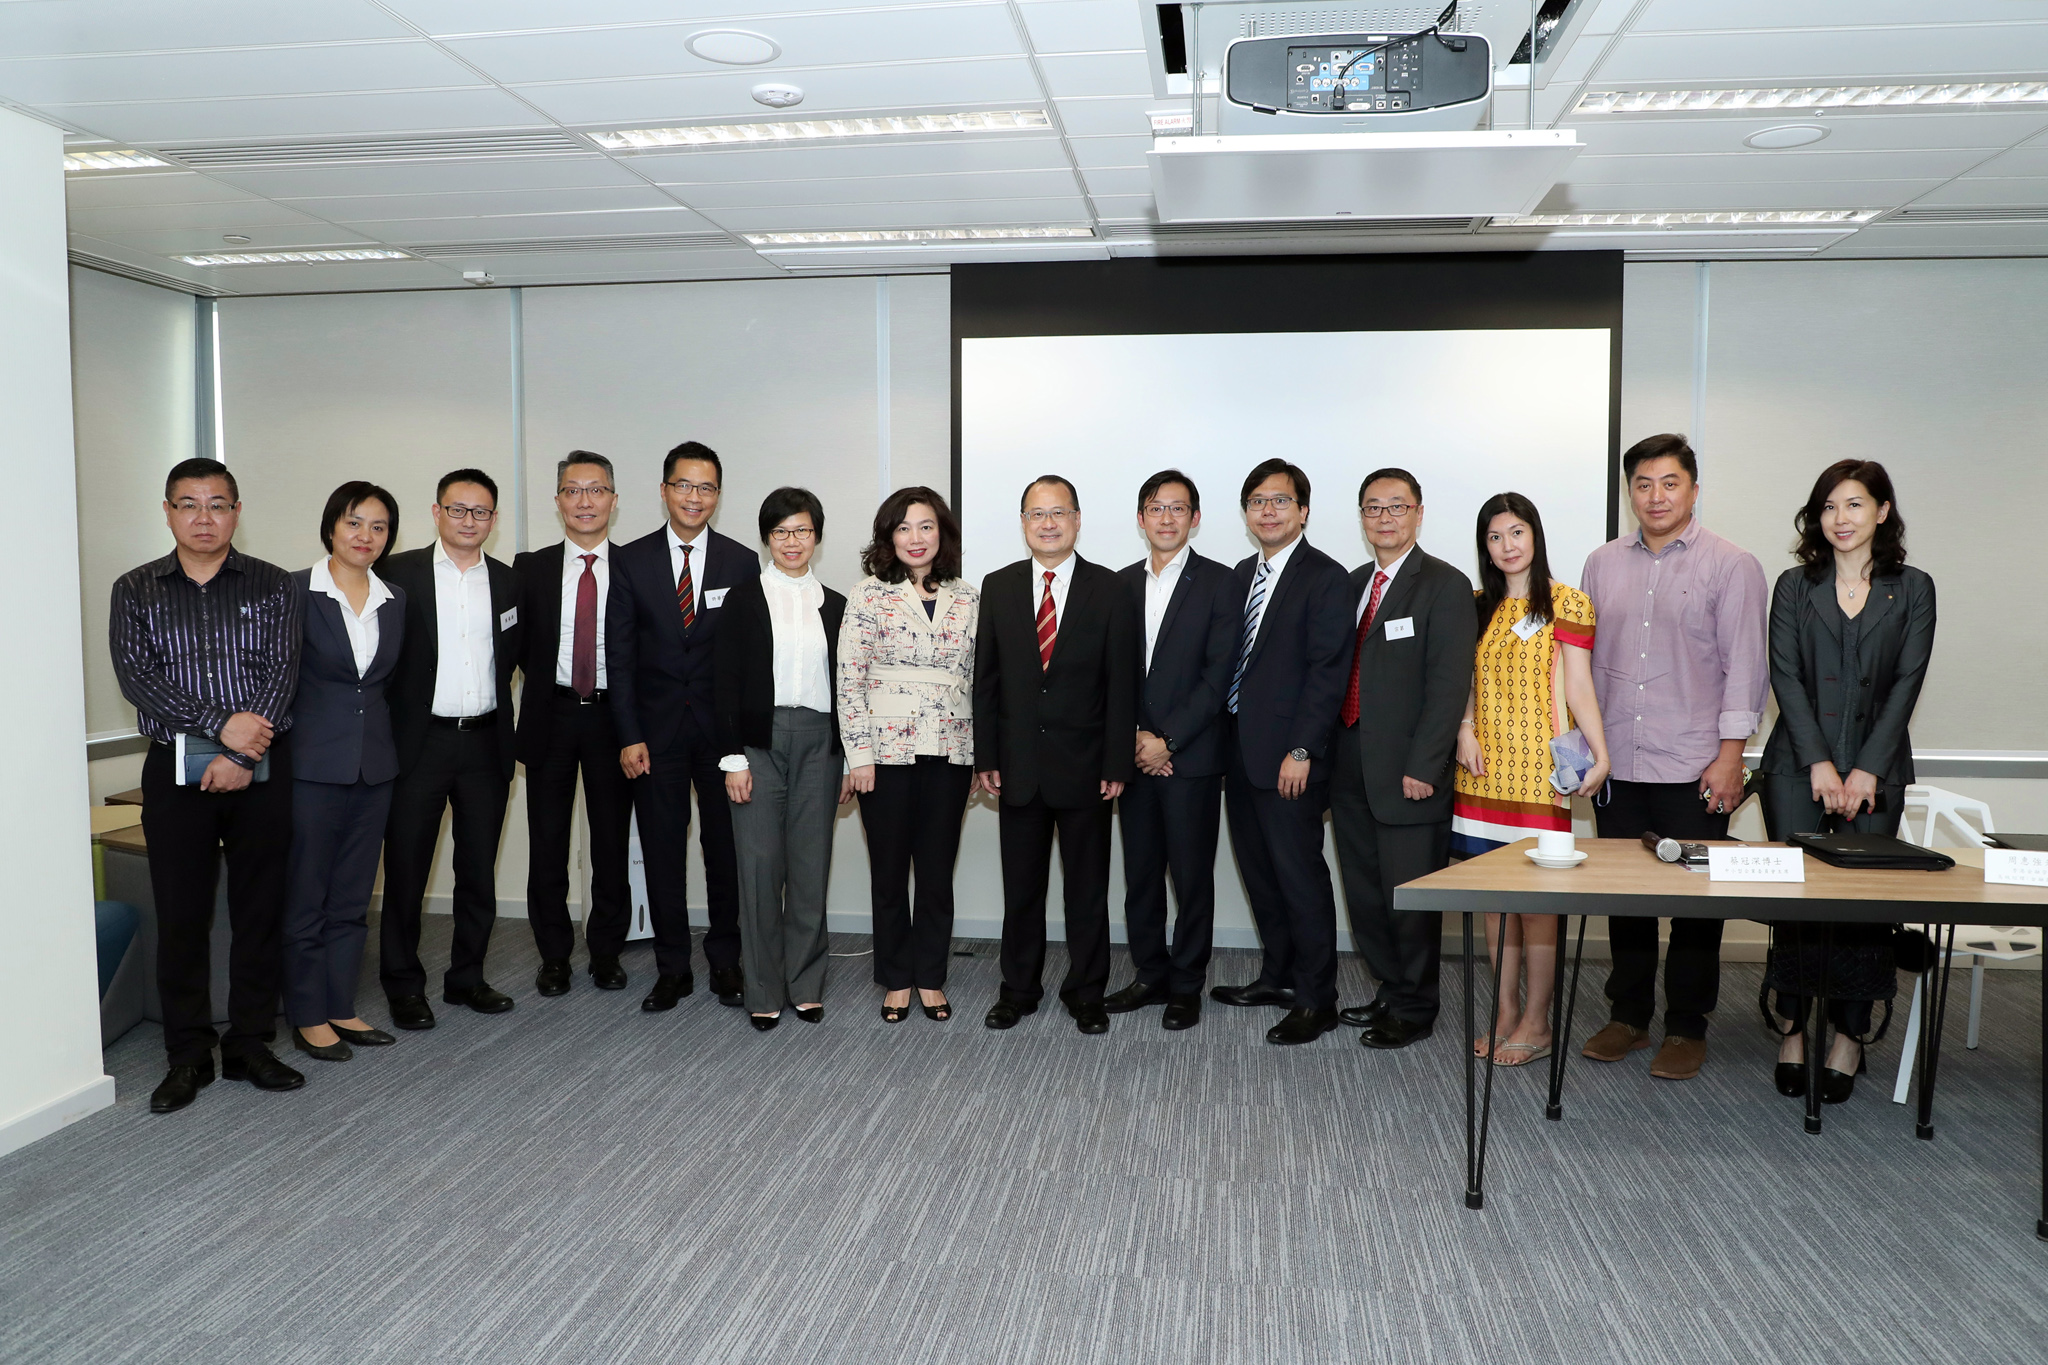 图   片   26 : 中 小 型 企 业 委 员 会 于 2018 年 11 月 21 日 与 中 小 企 业 组 织 会 面 ， 就 香 港 最 新 的 金 融 科 技 发 展 交 流 意 见 ， 并 邀 请 香 港 金 融 管 理 局 代 表 介 绍 最 新 推 出 的 金 融 科 技 措 施 ， 包 括 「 转 数 快 」 、 「 虚 拟 银 行 」 和 「 共 用 二 维 码 」 。 